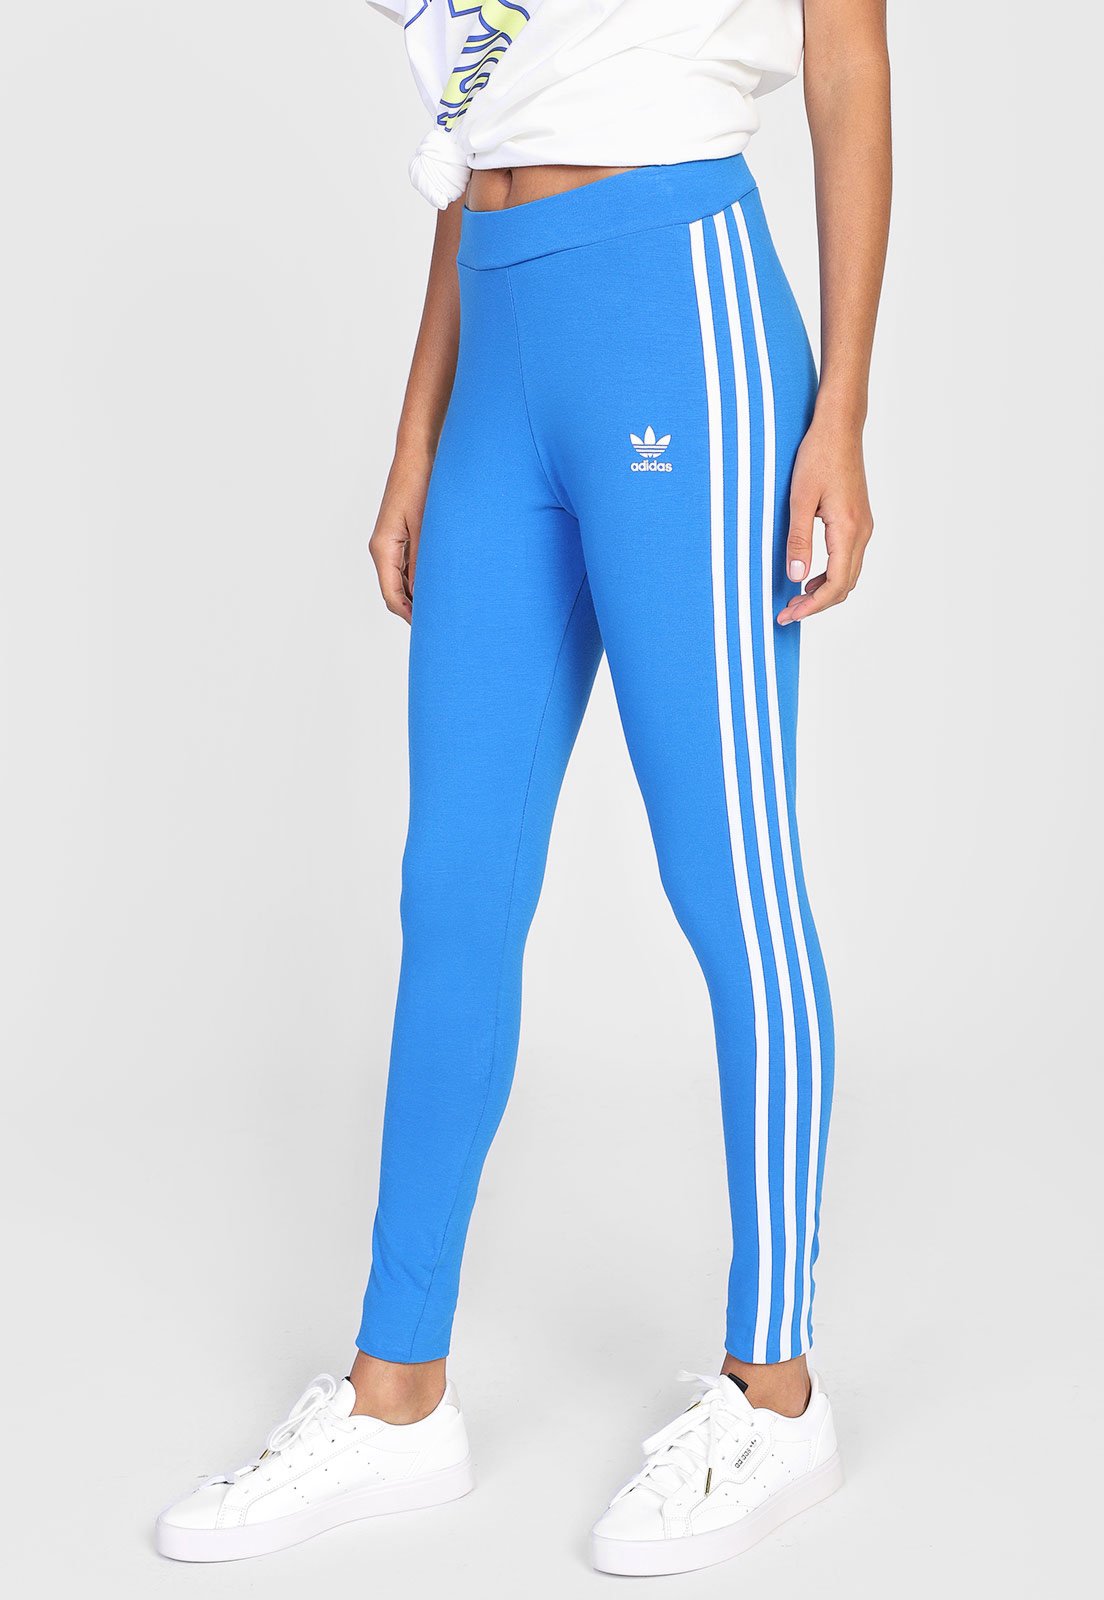 Adidas Originals Leggings L.A. CB STR (azul/blanco/rojo)